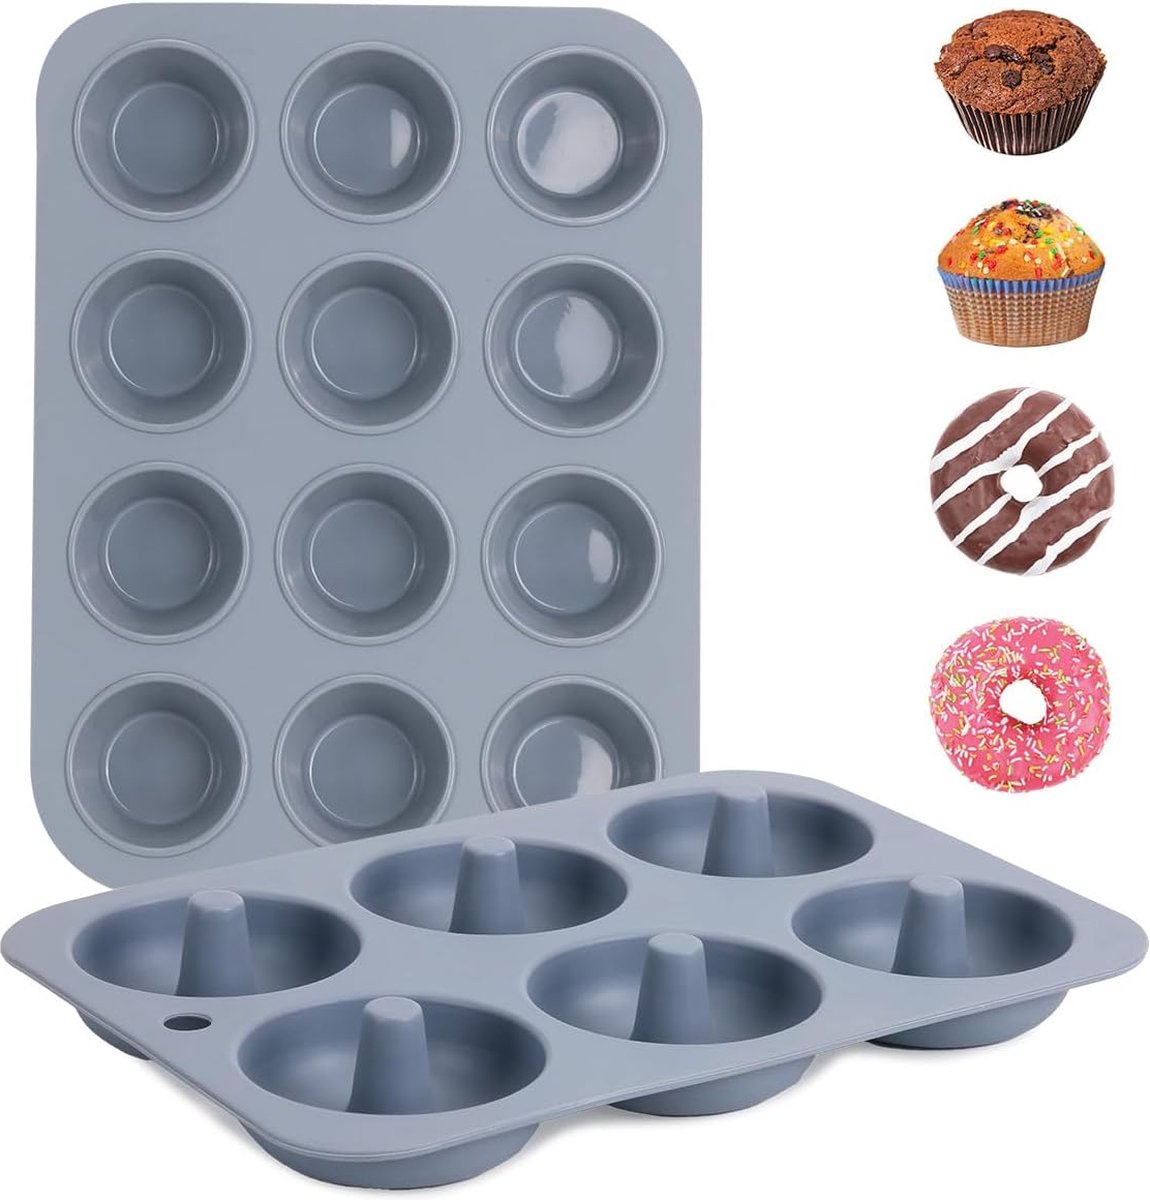 Muffinvorm siliconen voor 12 muffins & 6 donuts bakvorm, siliconen bakvorm 2 stuks, hoogwaardige bakvorm met uitstekende warmtegeleiding BPA-vrij voor cupcakes, brownies, cake, pudding,